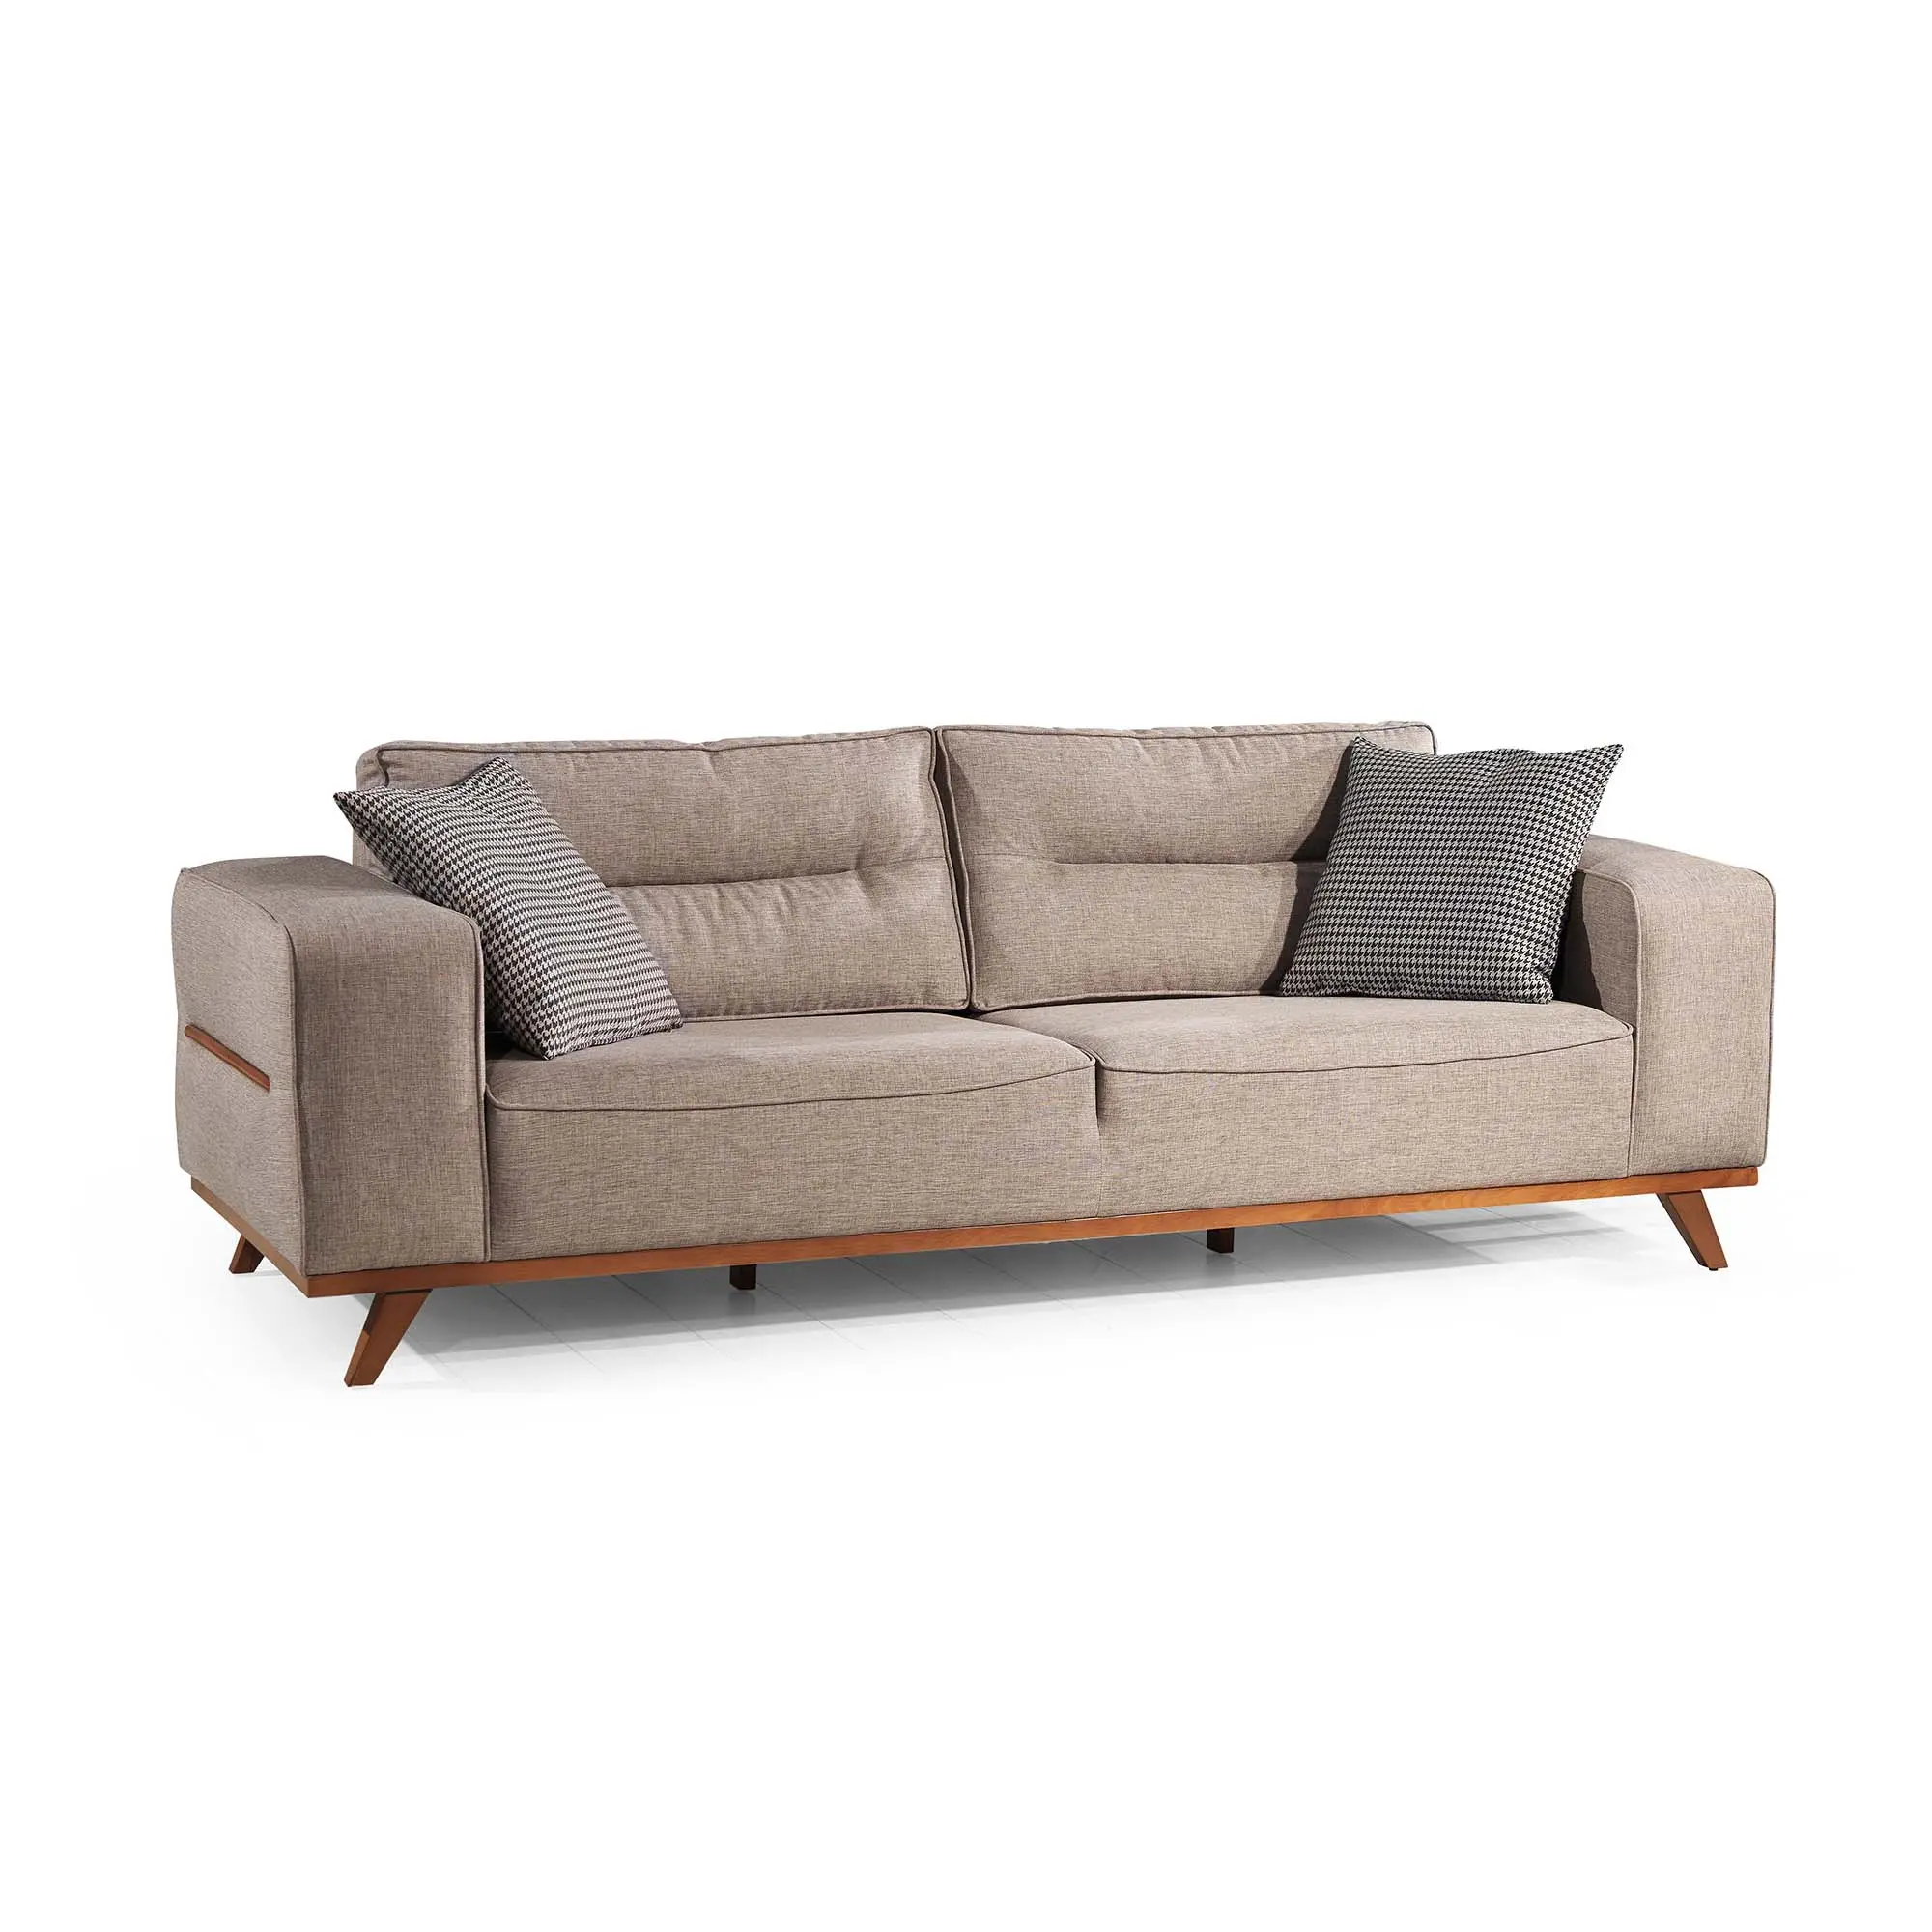 Serhat Home OSLO Sofa Neues Modell Europäisches Design Möbel Klassisches elegantes Wohnzimmer Exklusives Sofa Hochwertiger Luxus